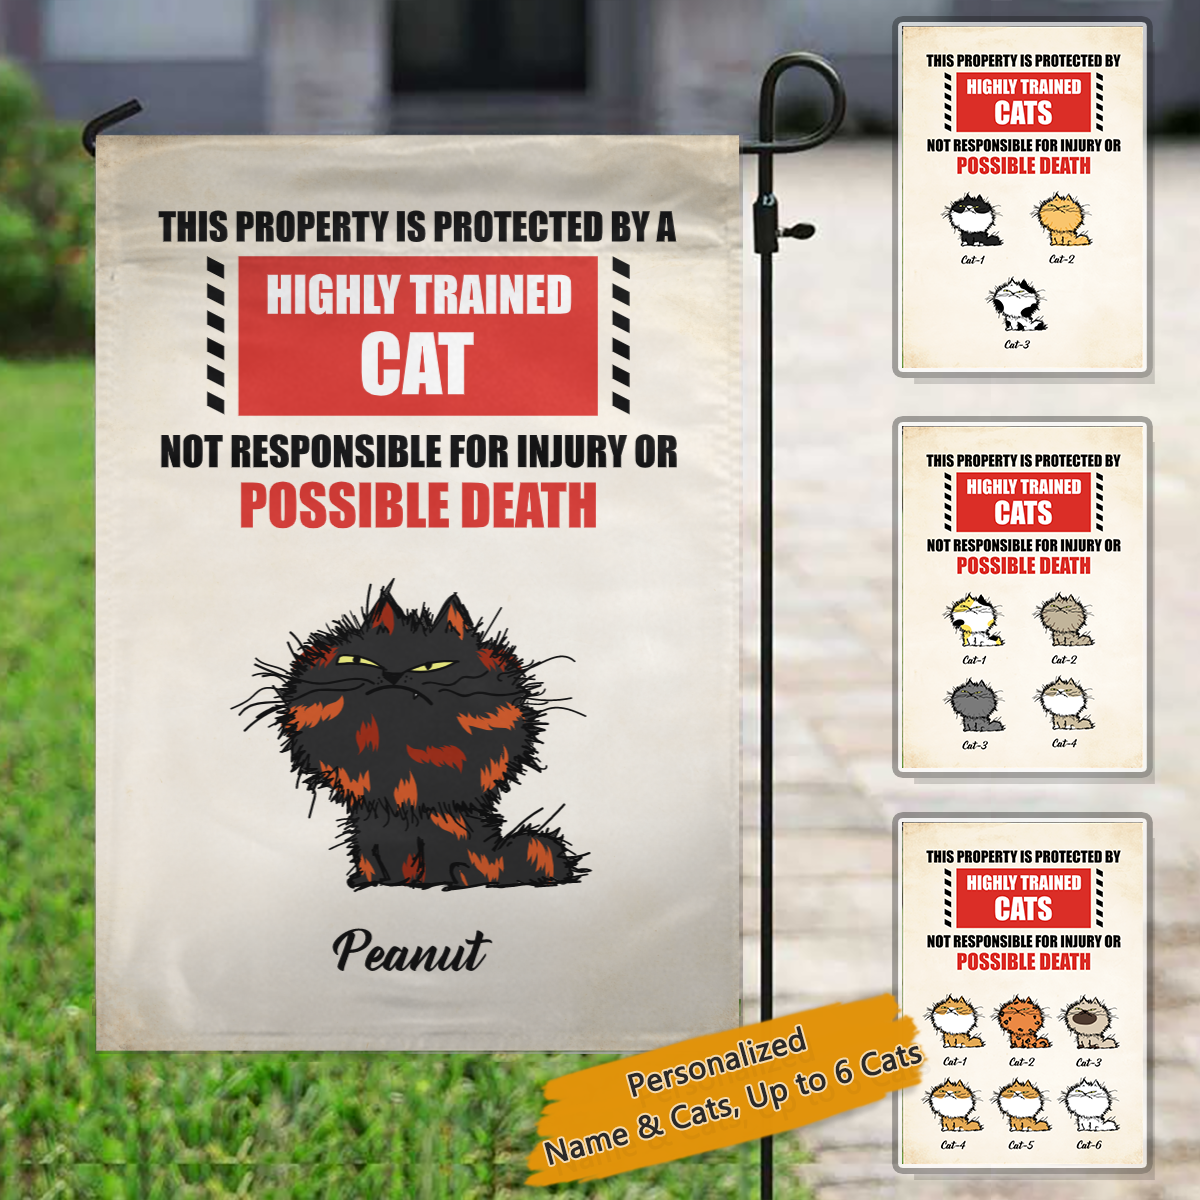 このプロパティは、高度に訓練されたパーソナライズされた猫の装飾的な庭の旗によって保護されています